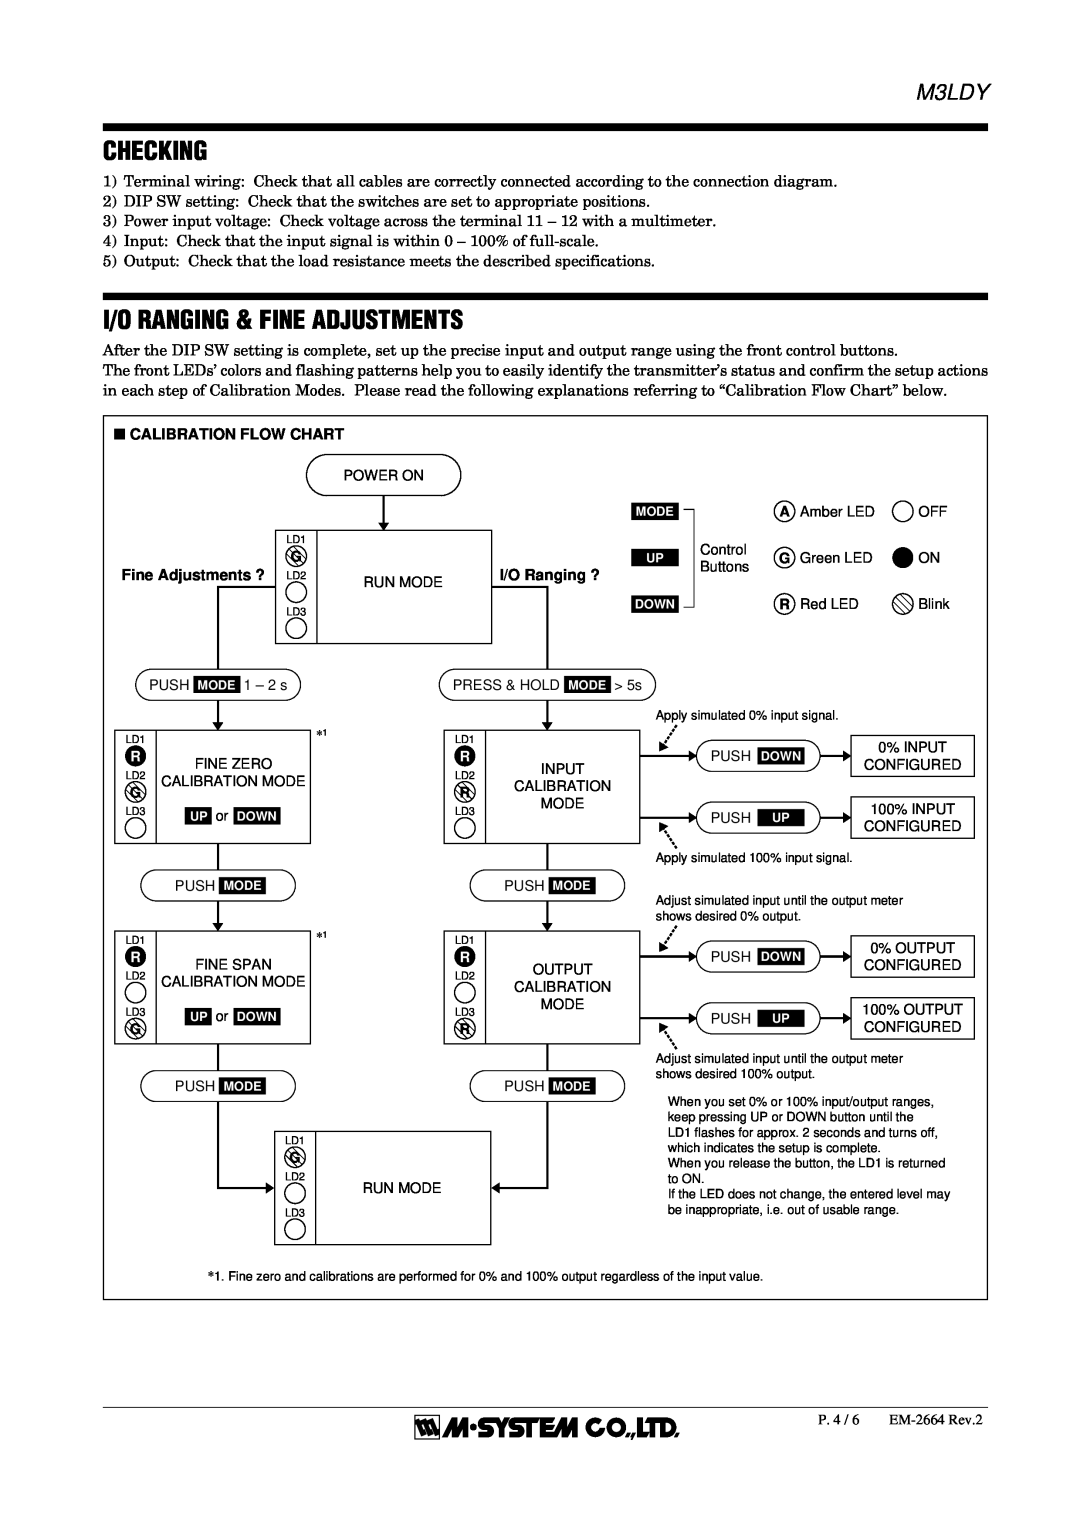 B&B Electronics M3LDY instruction manual Checking, I/O Ranging & Fine Adjustments, Push Mode 